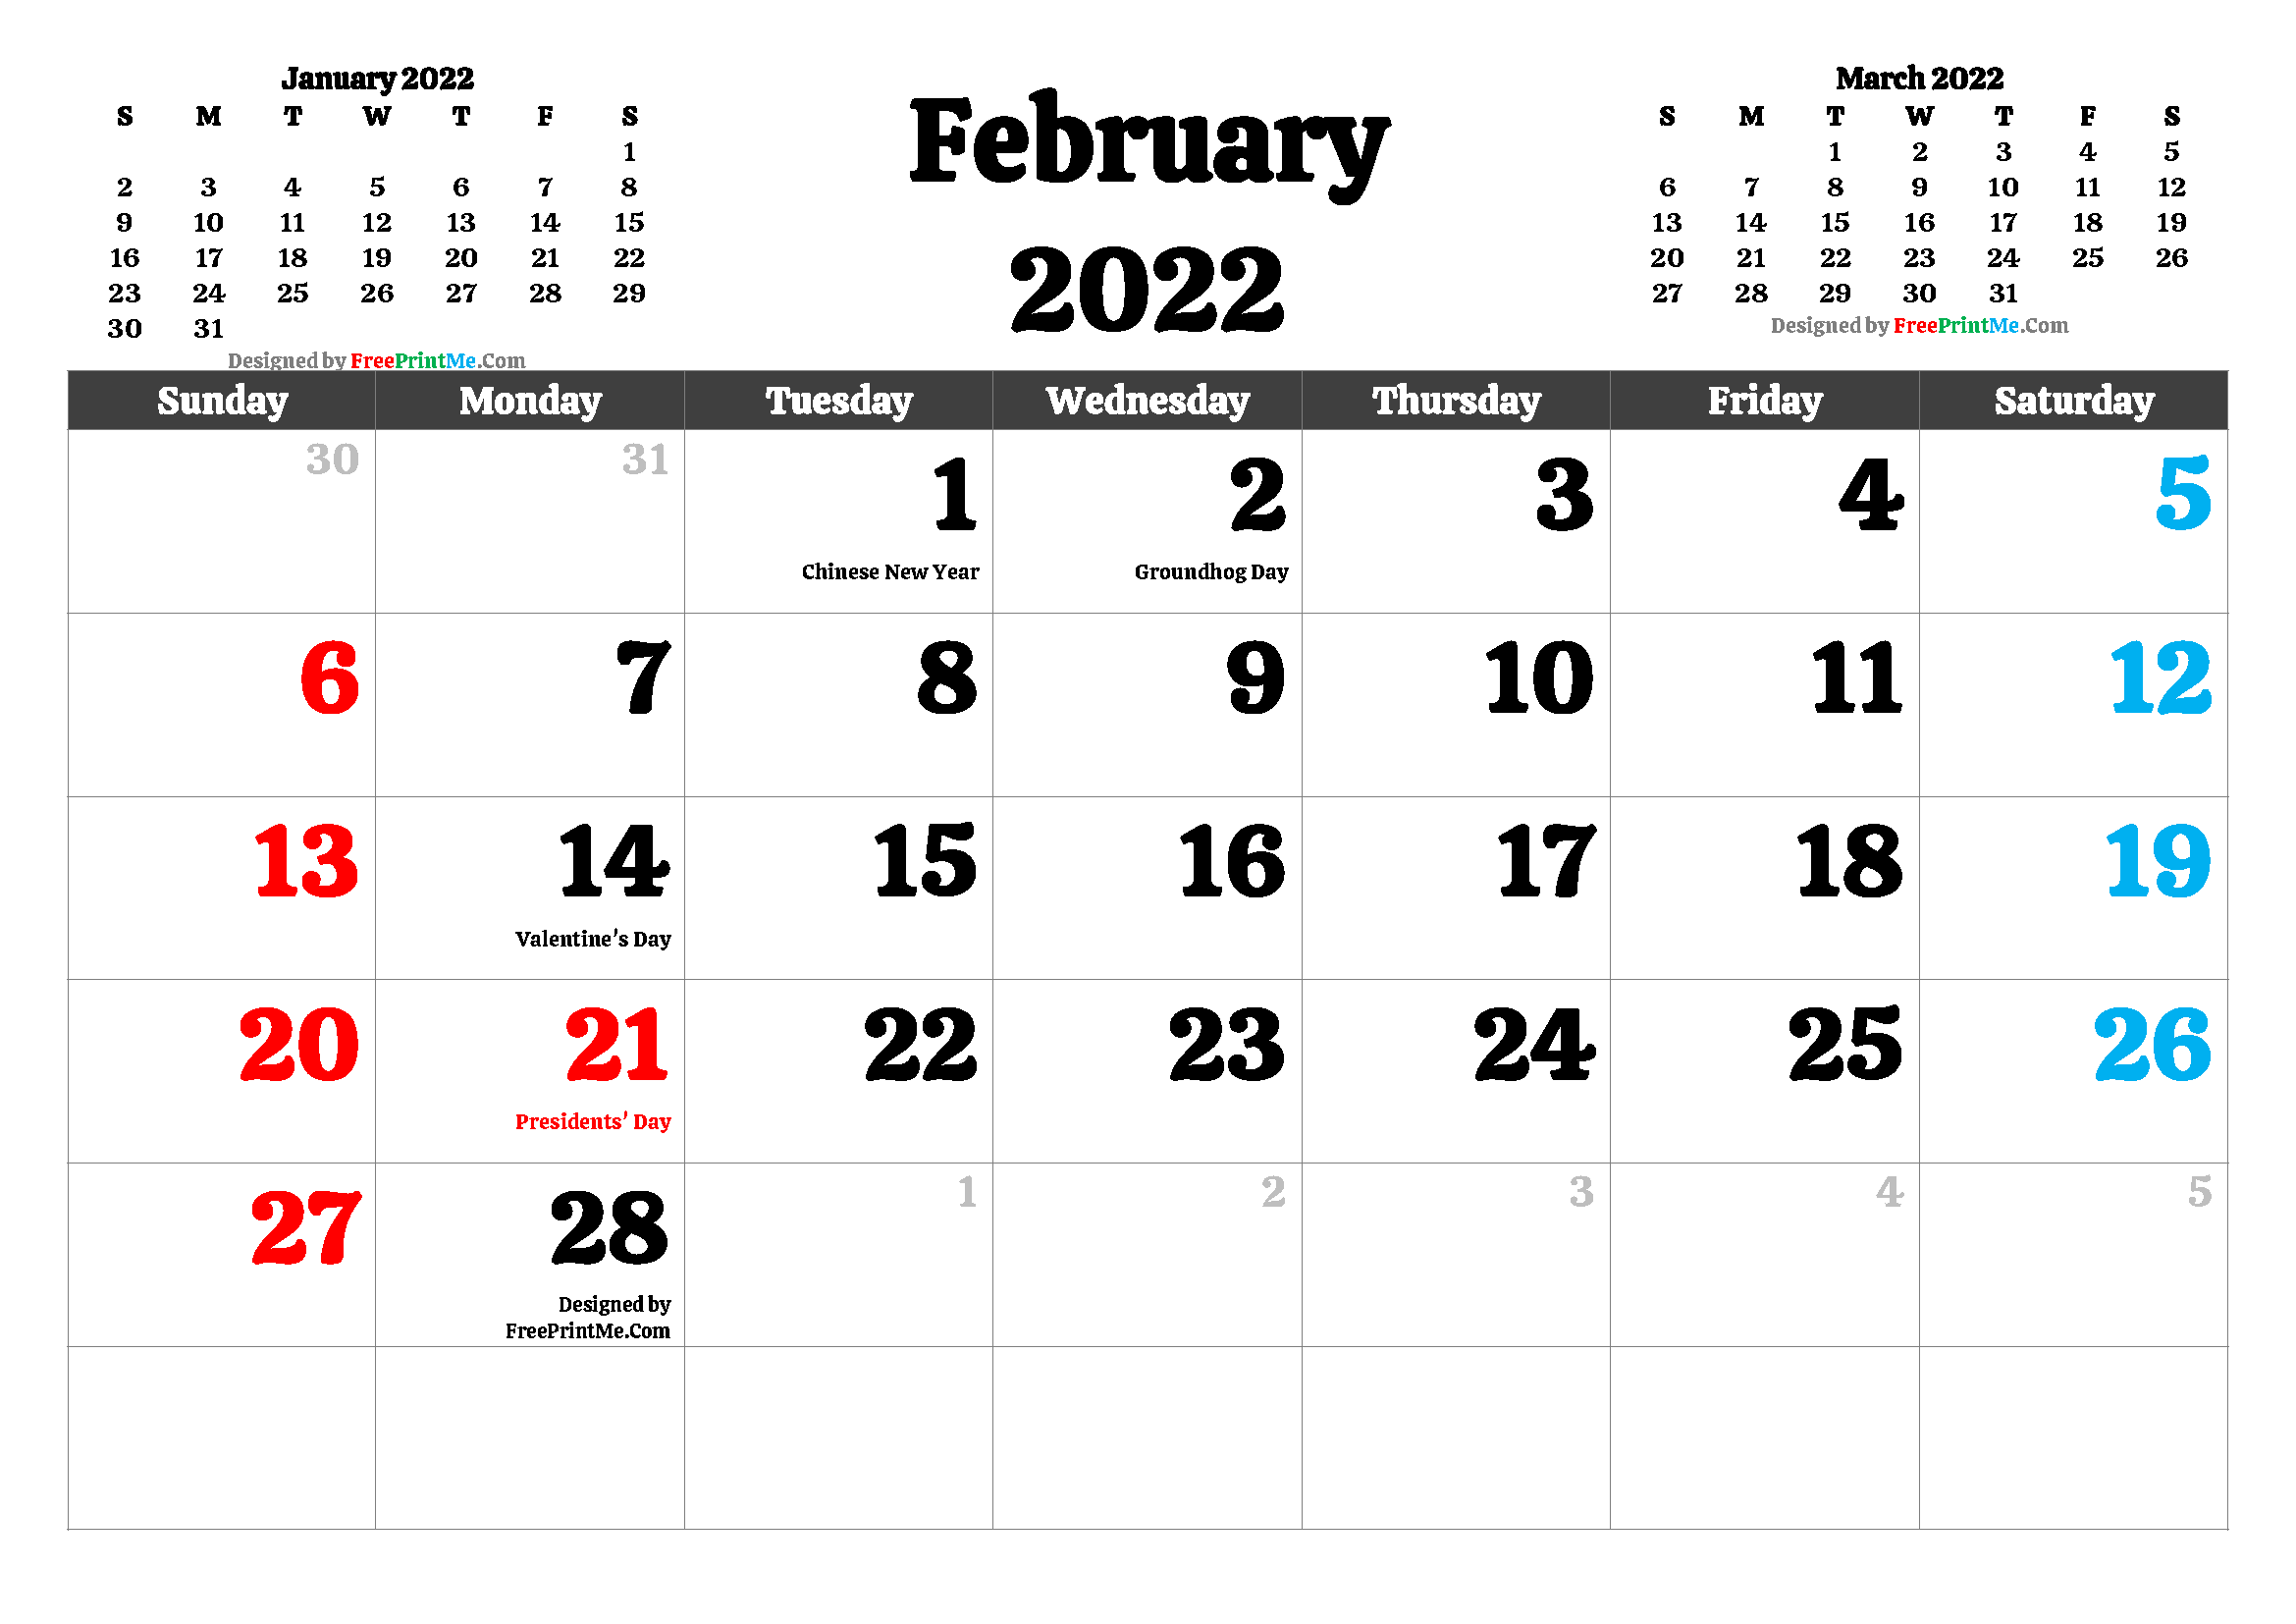 Febuary 2022 Calendar Free Printable February 2022 Calendar Pdf And Image